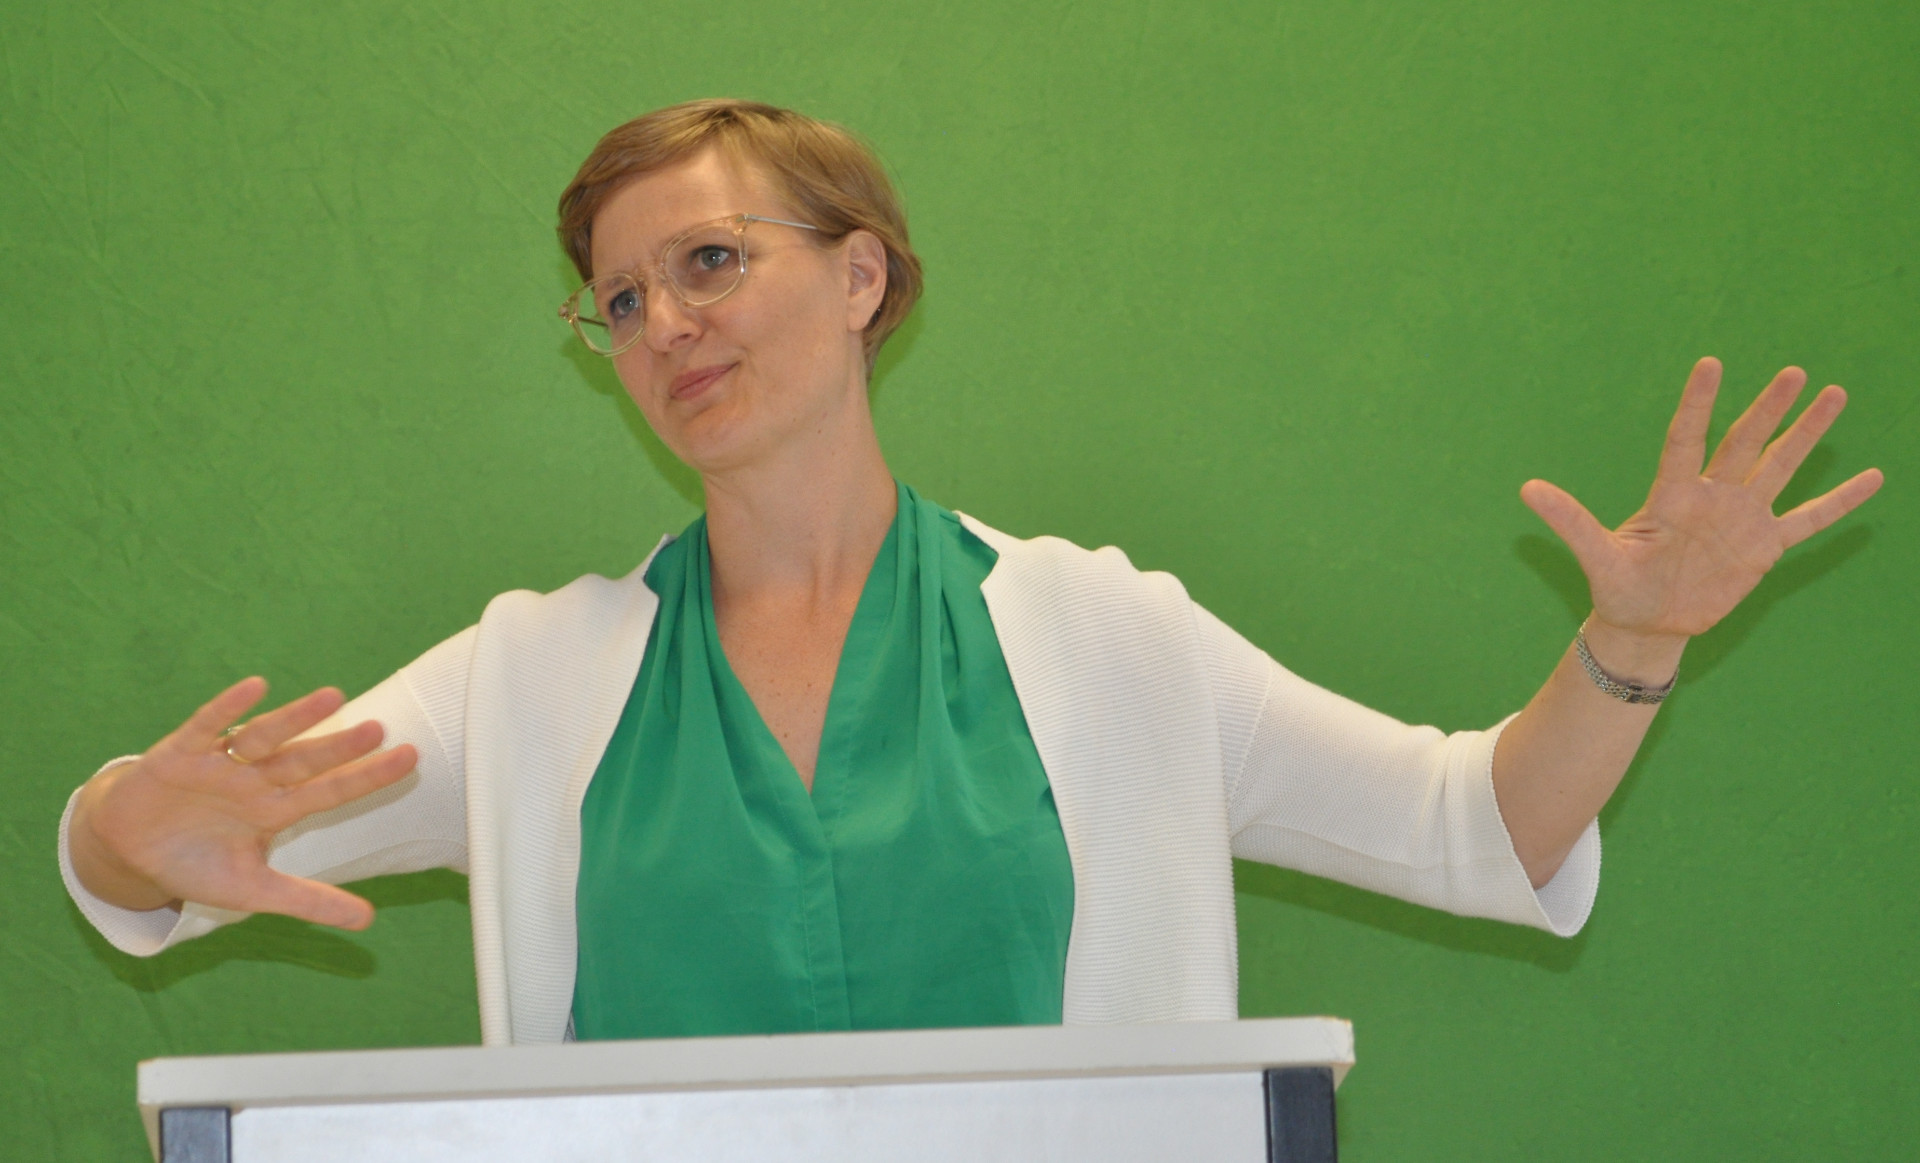 Dr. Franziska Brantner bei ihrer Veranstaltung im Mittelstandszentrum Tauberfranken